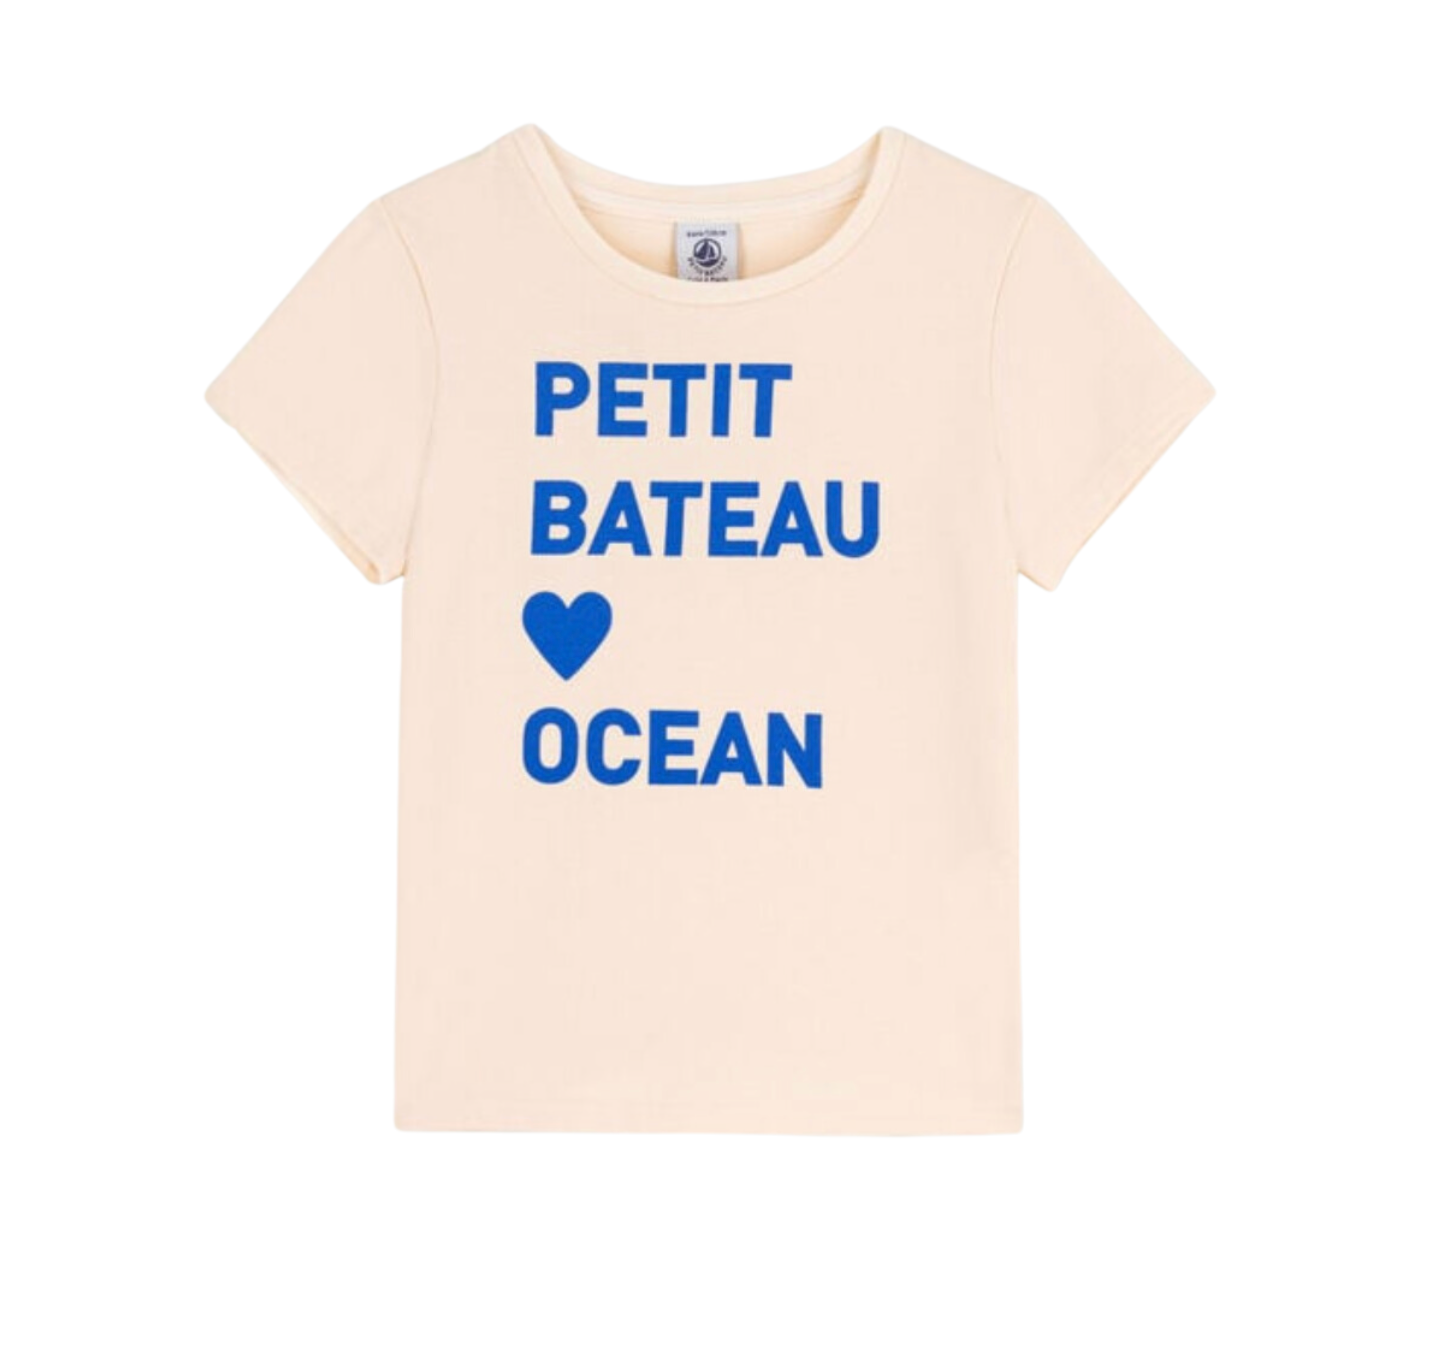 PETIT BATEAU - T-shirt écru « Petit bateau océan » - 4 ans